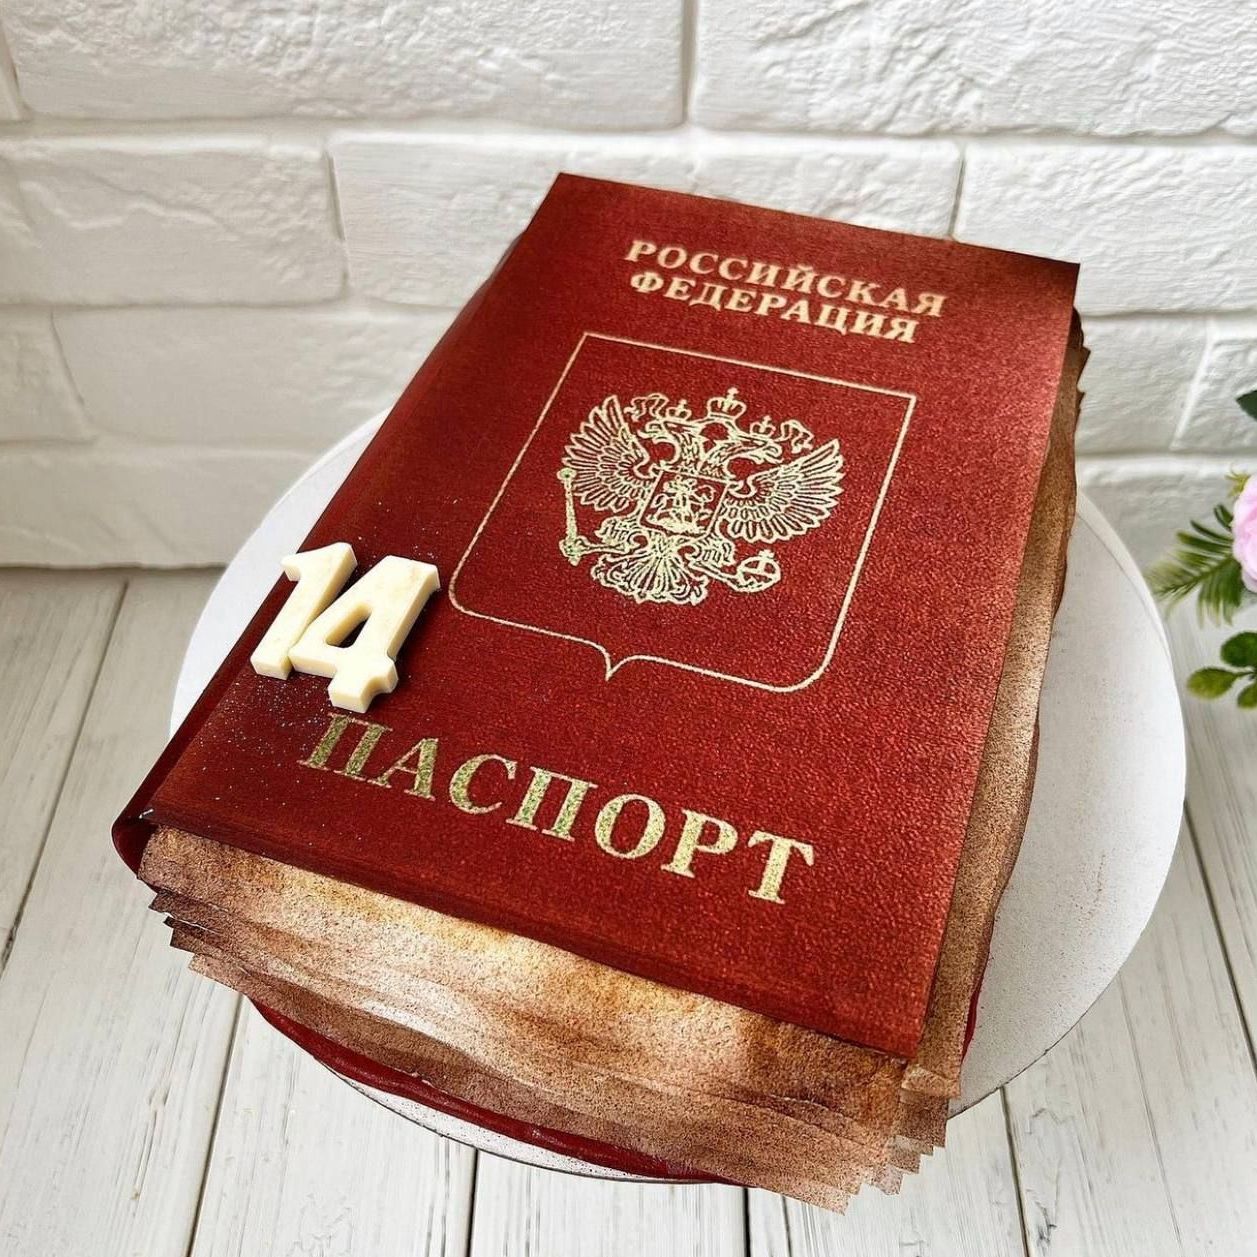 Фото тортов с паспортом для мальчика